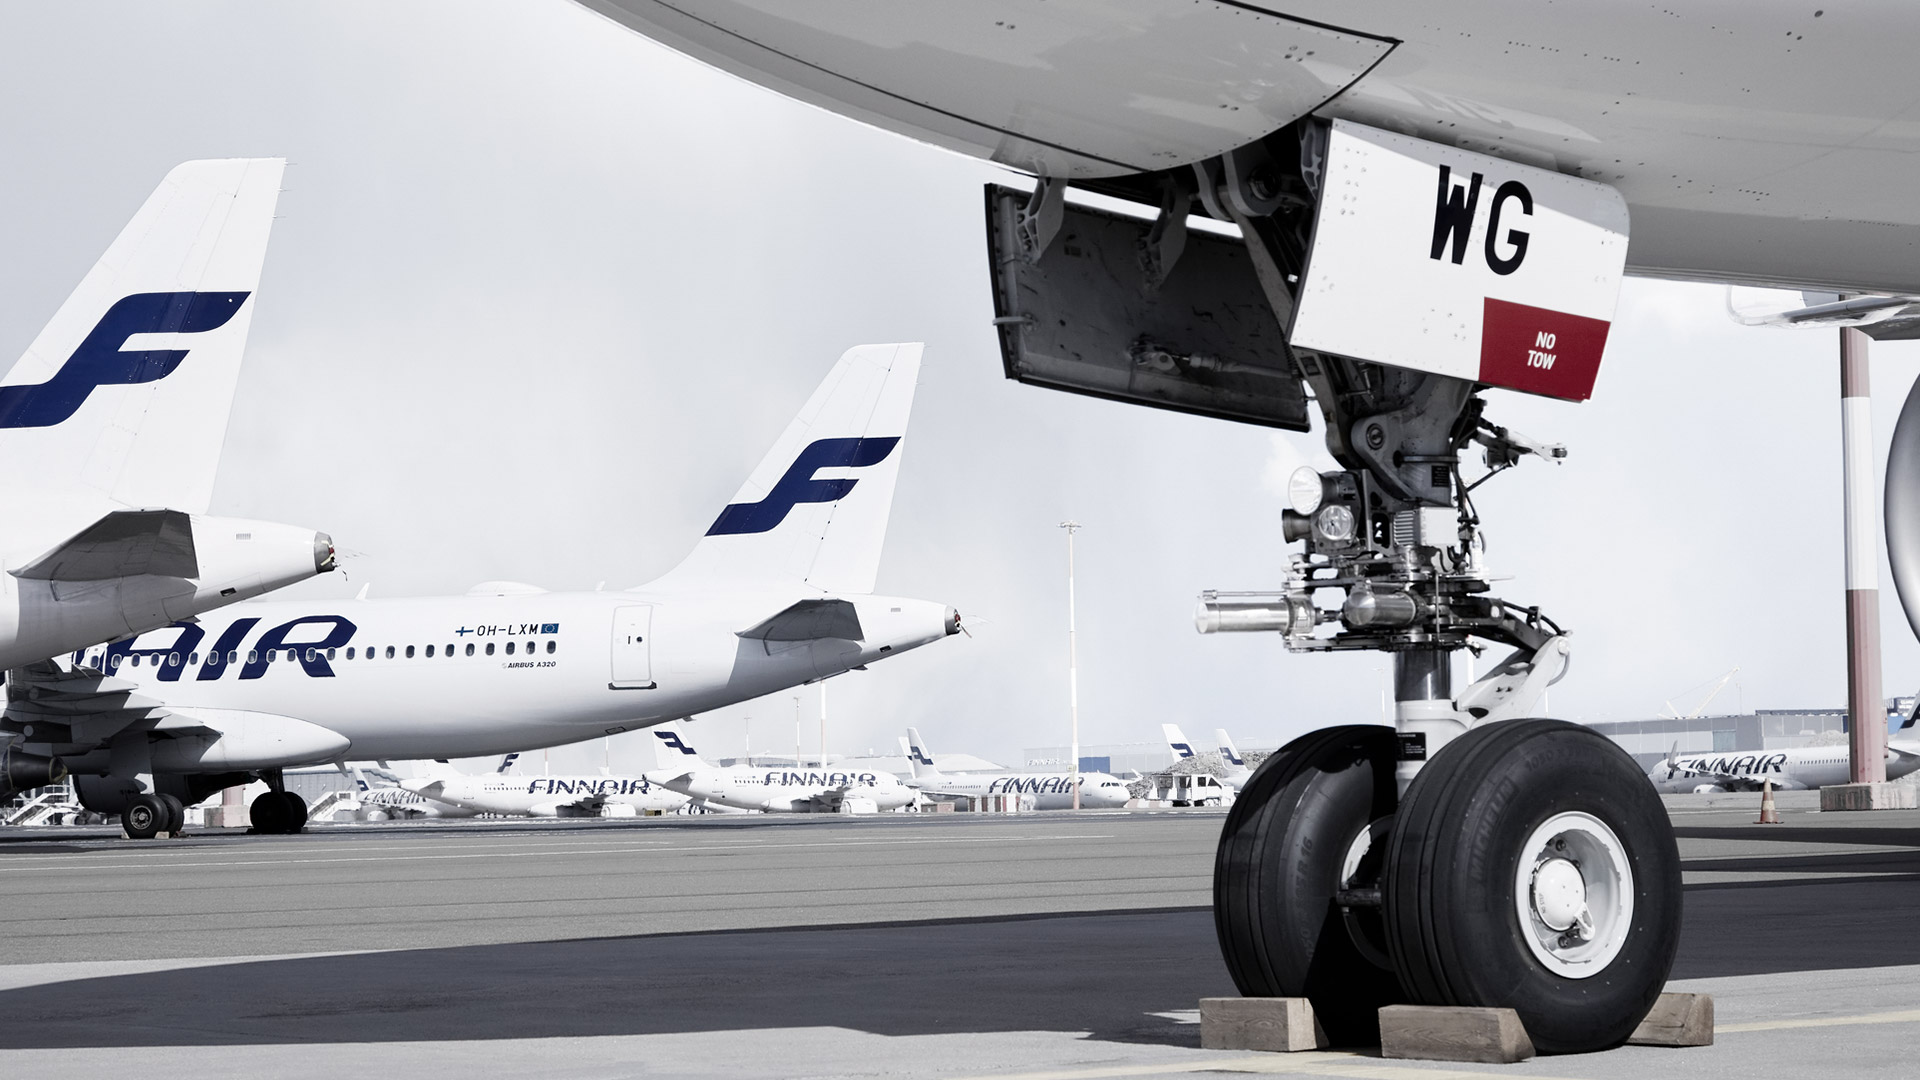 DHL ja Finnair Tekniikka aloittavat yhteistyön varastointipalveluissa